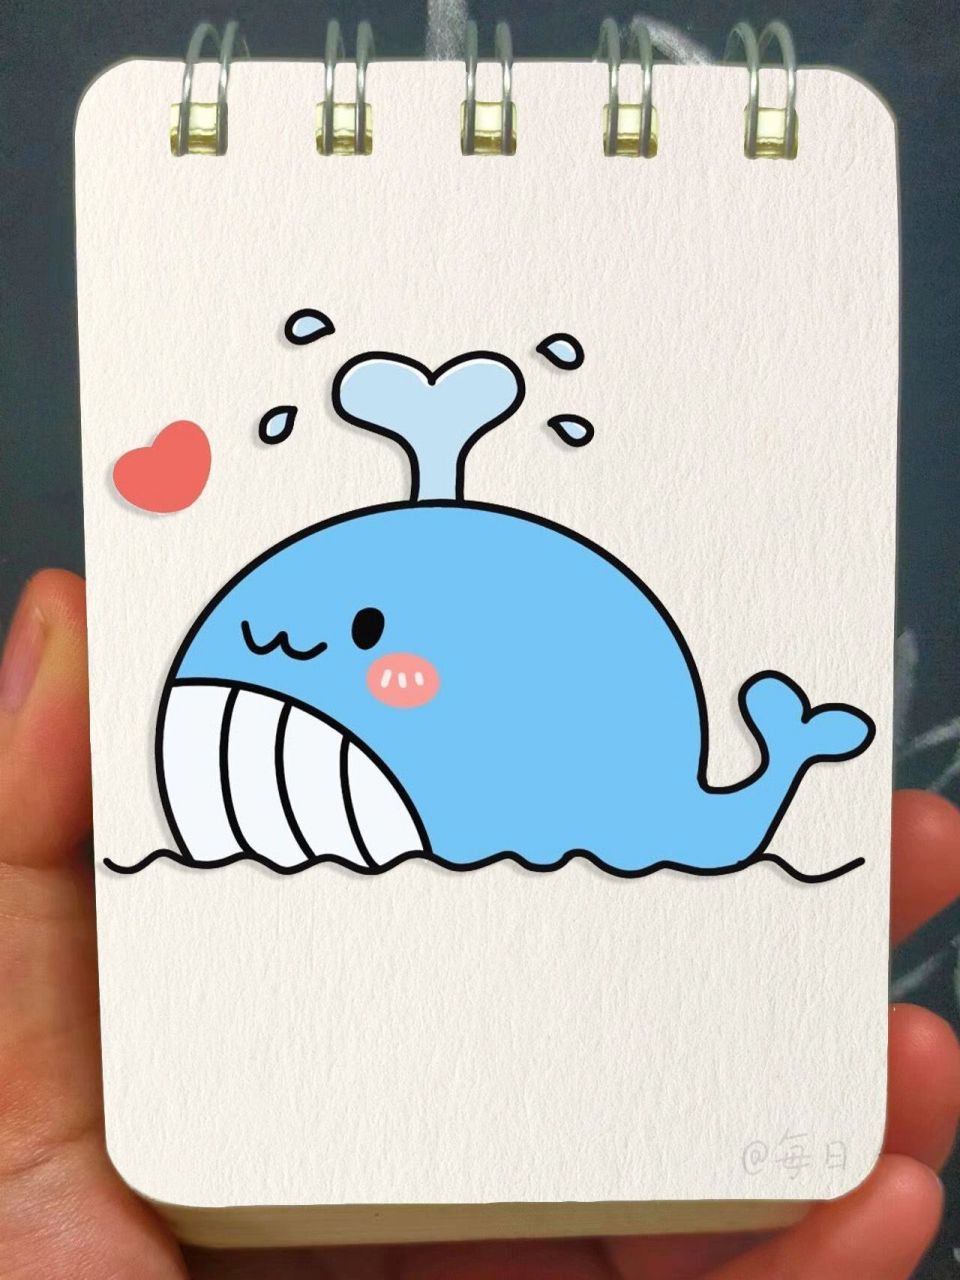 简笔画教程—喷水的小鲸鱼 可爱喷水的小鲸鱼快来画吧!